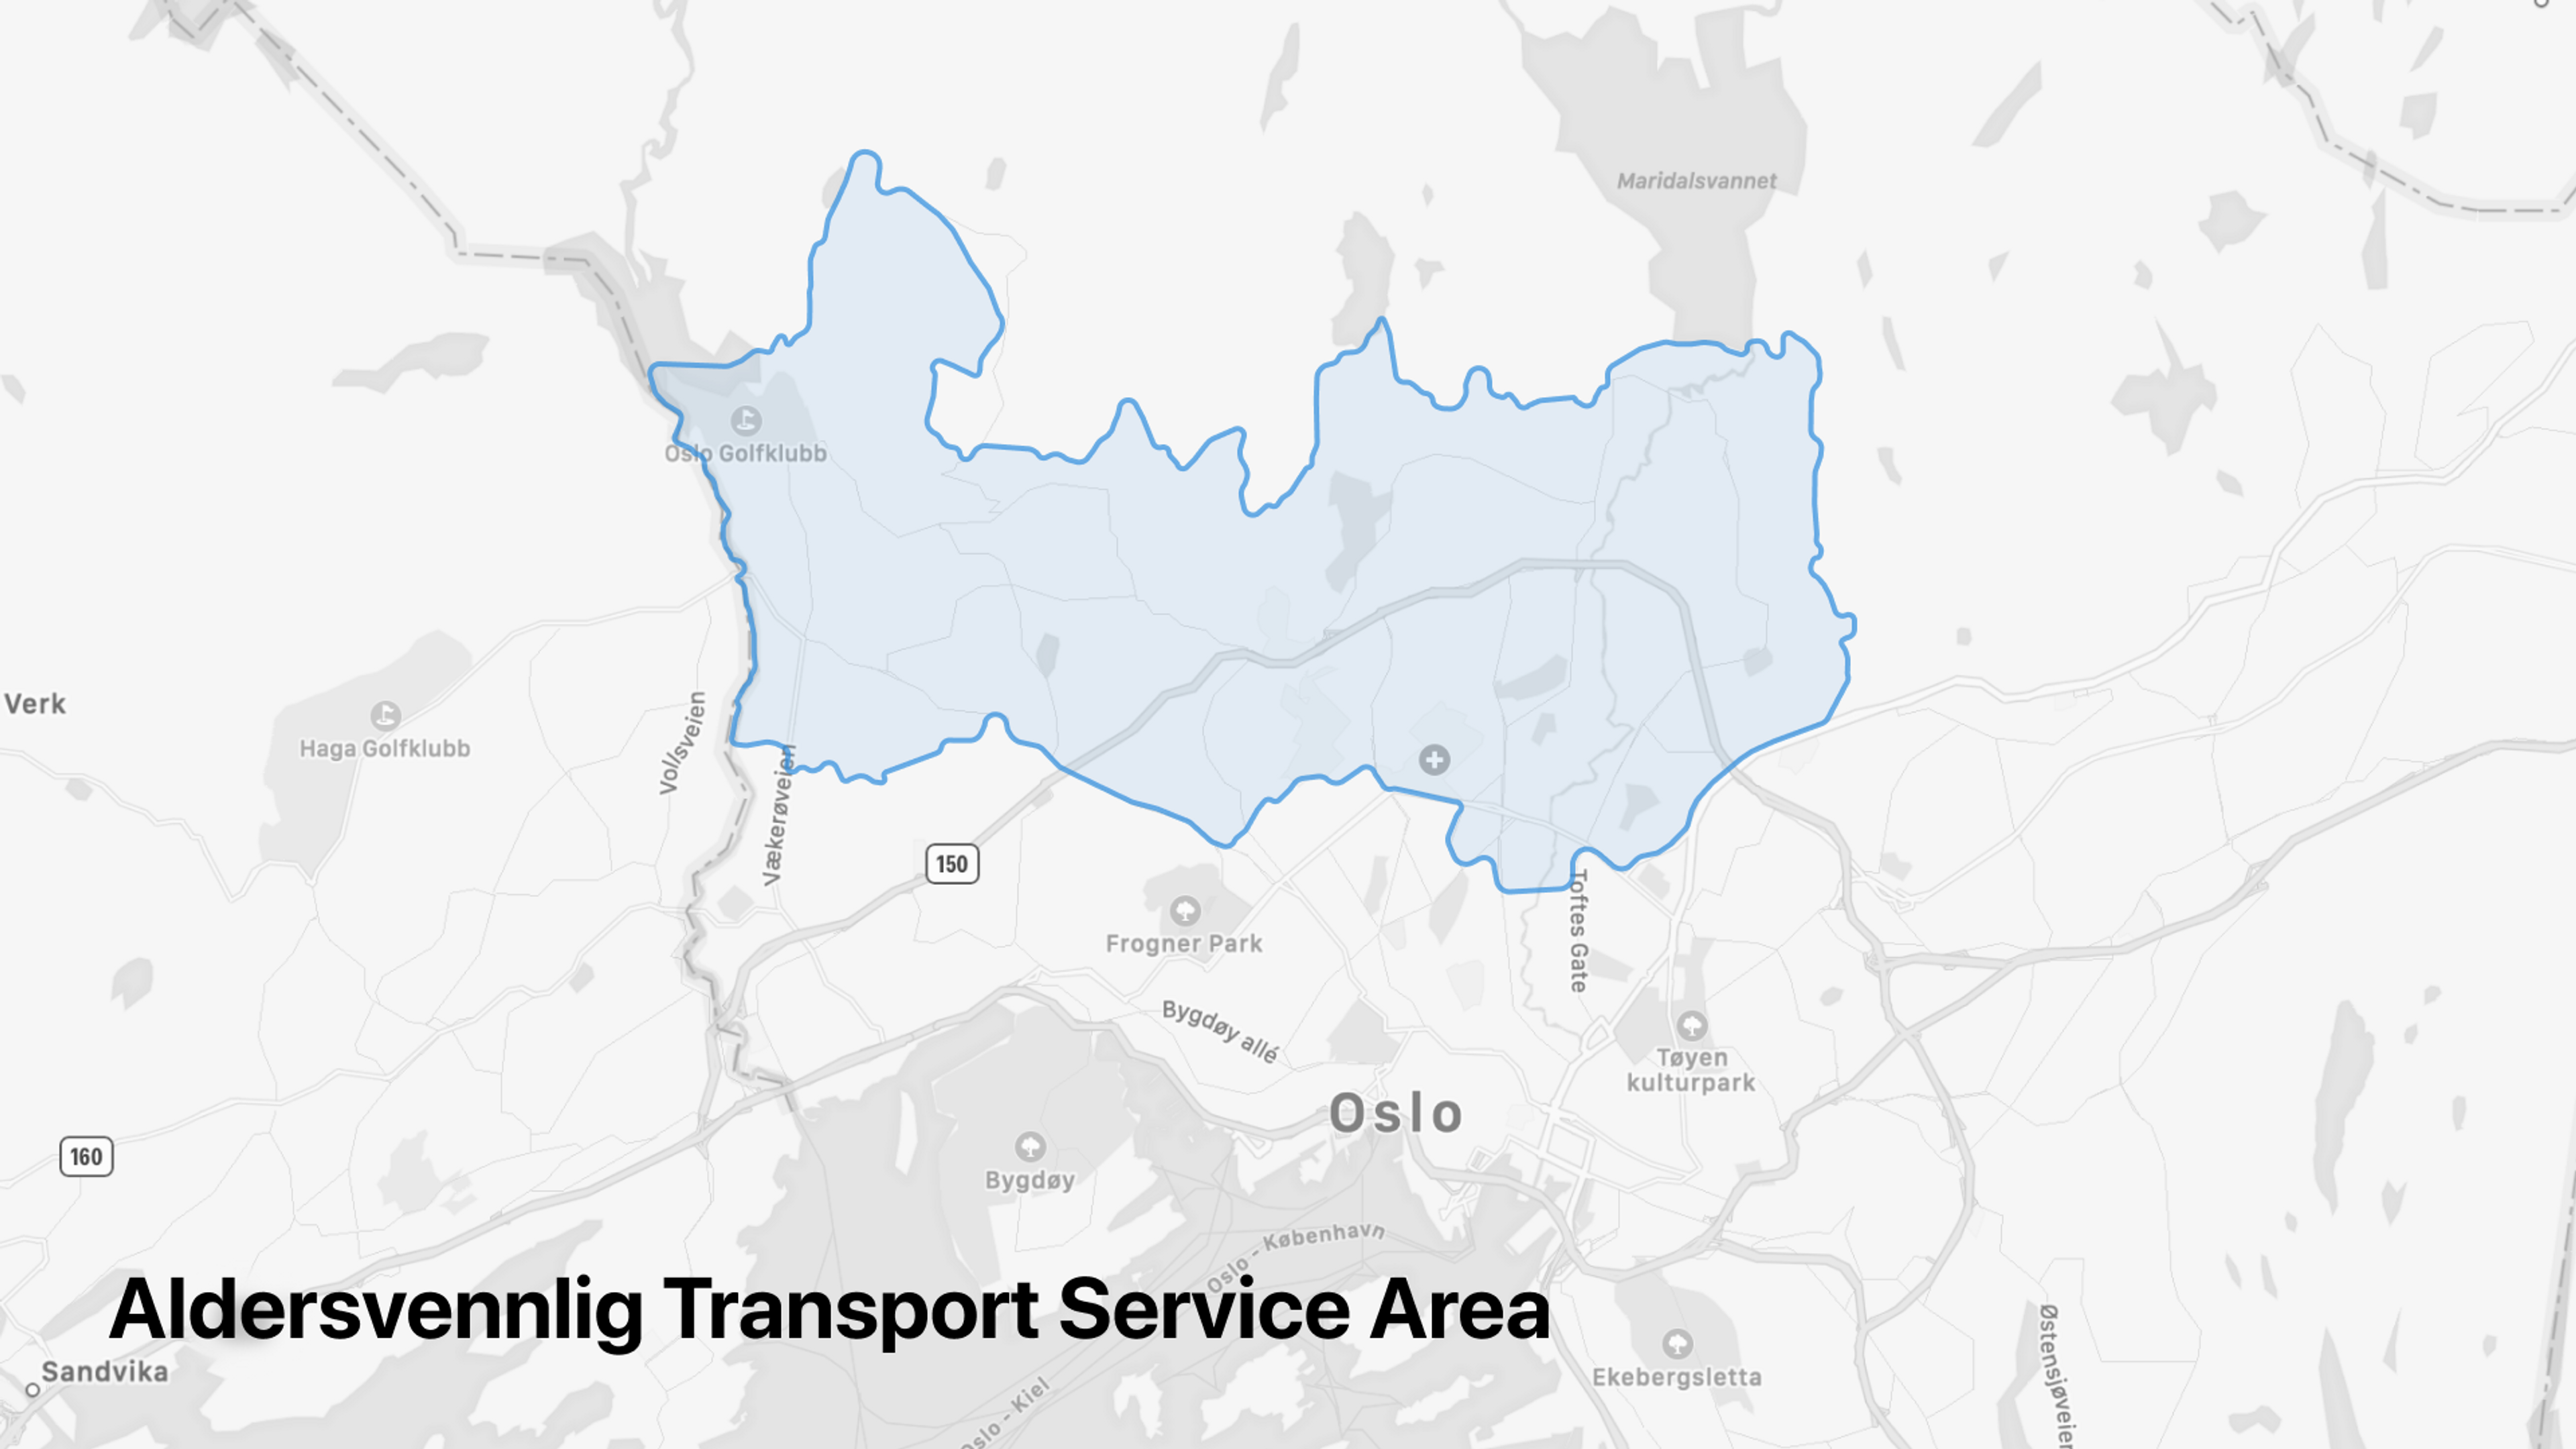 Aldersvennlig Transport Service Area